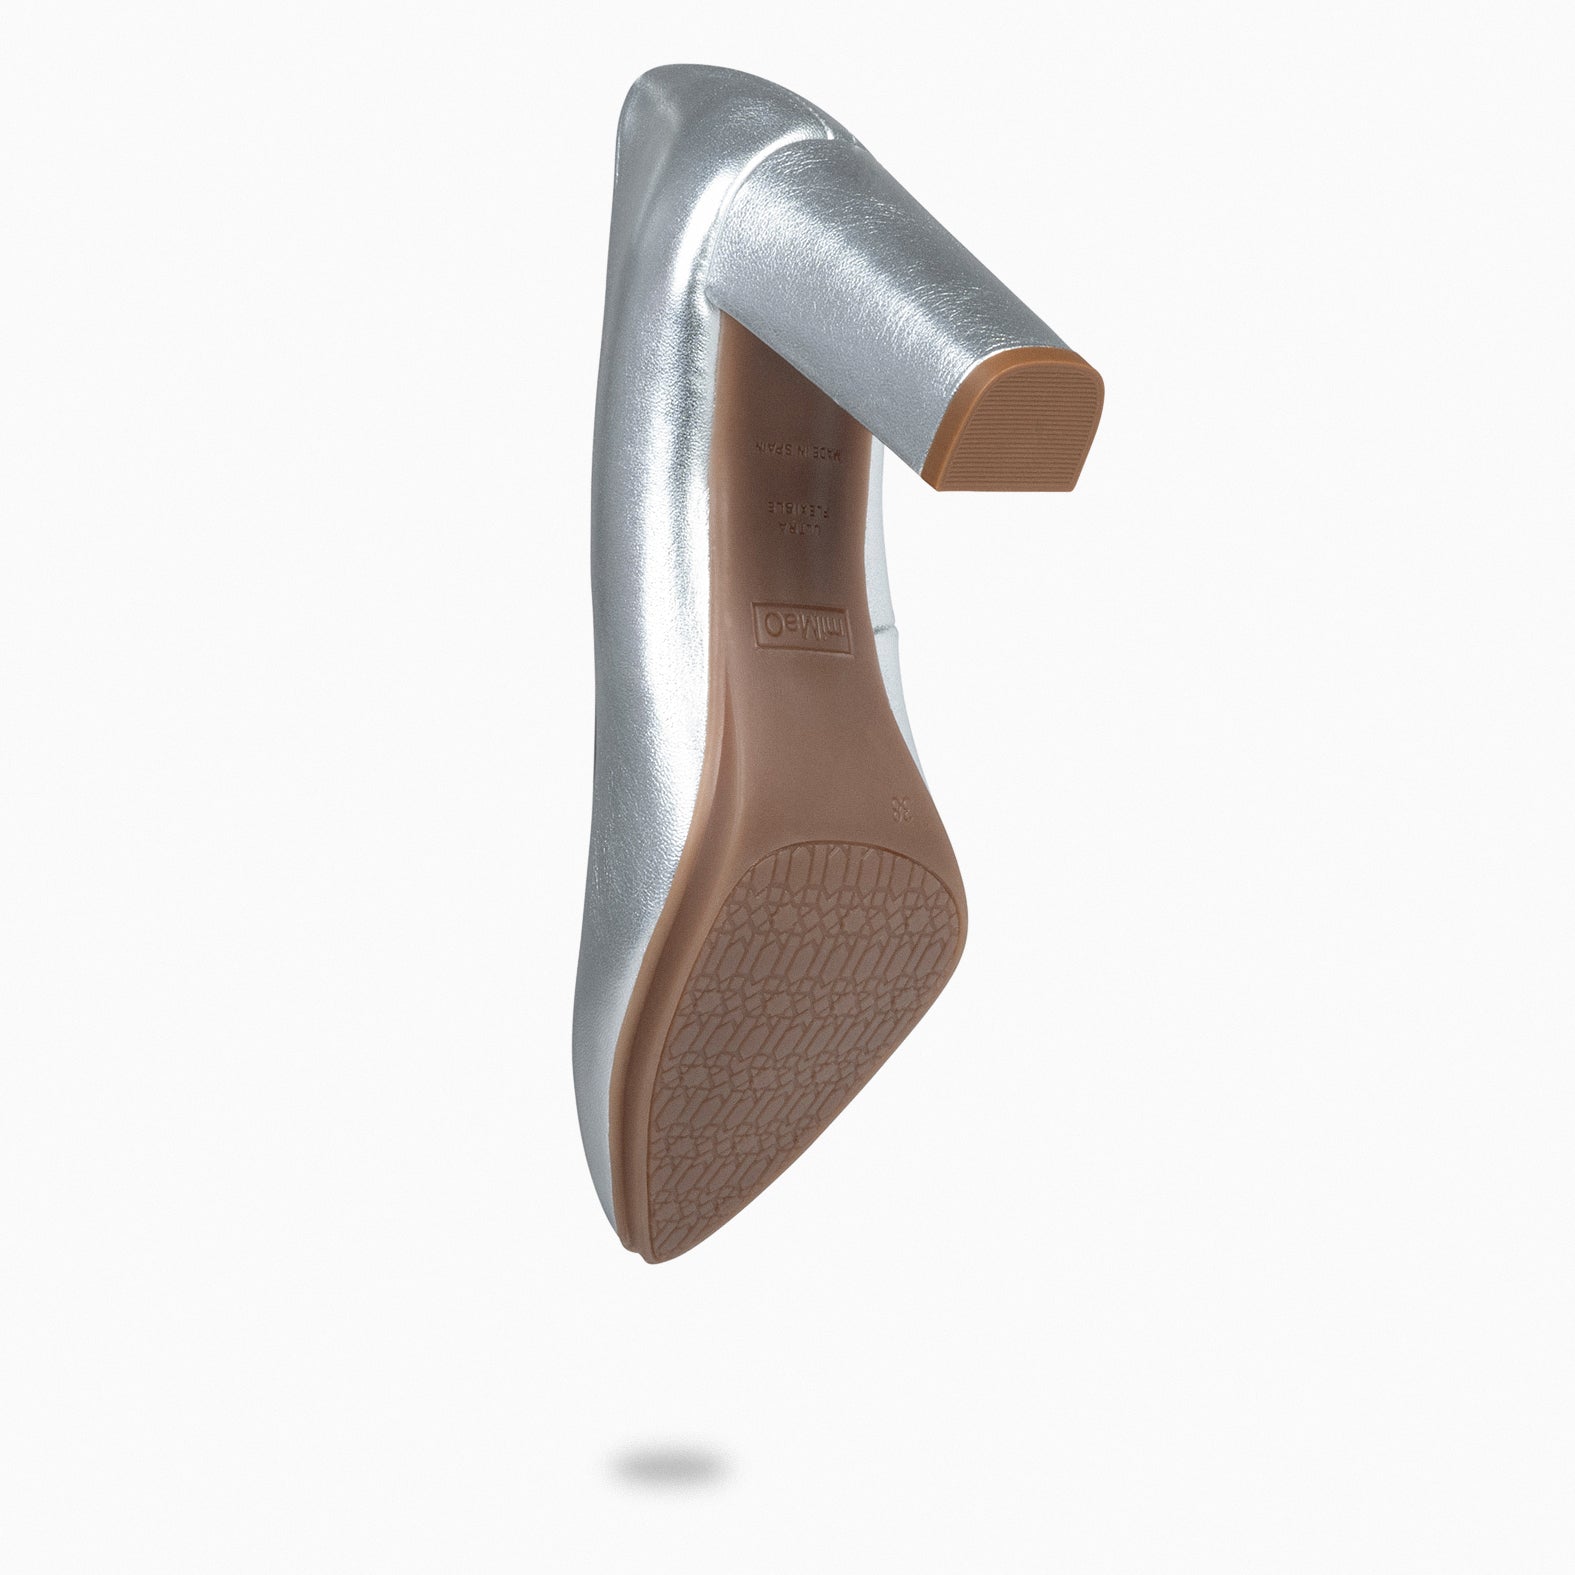 URBAN SPLASH - Zapatos de tacón con piel metalizada PLATA